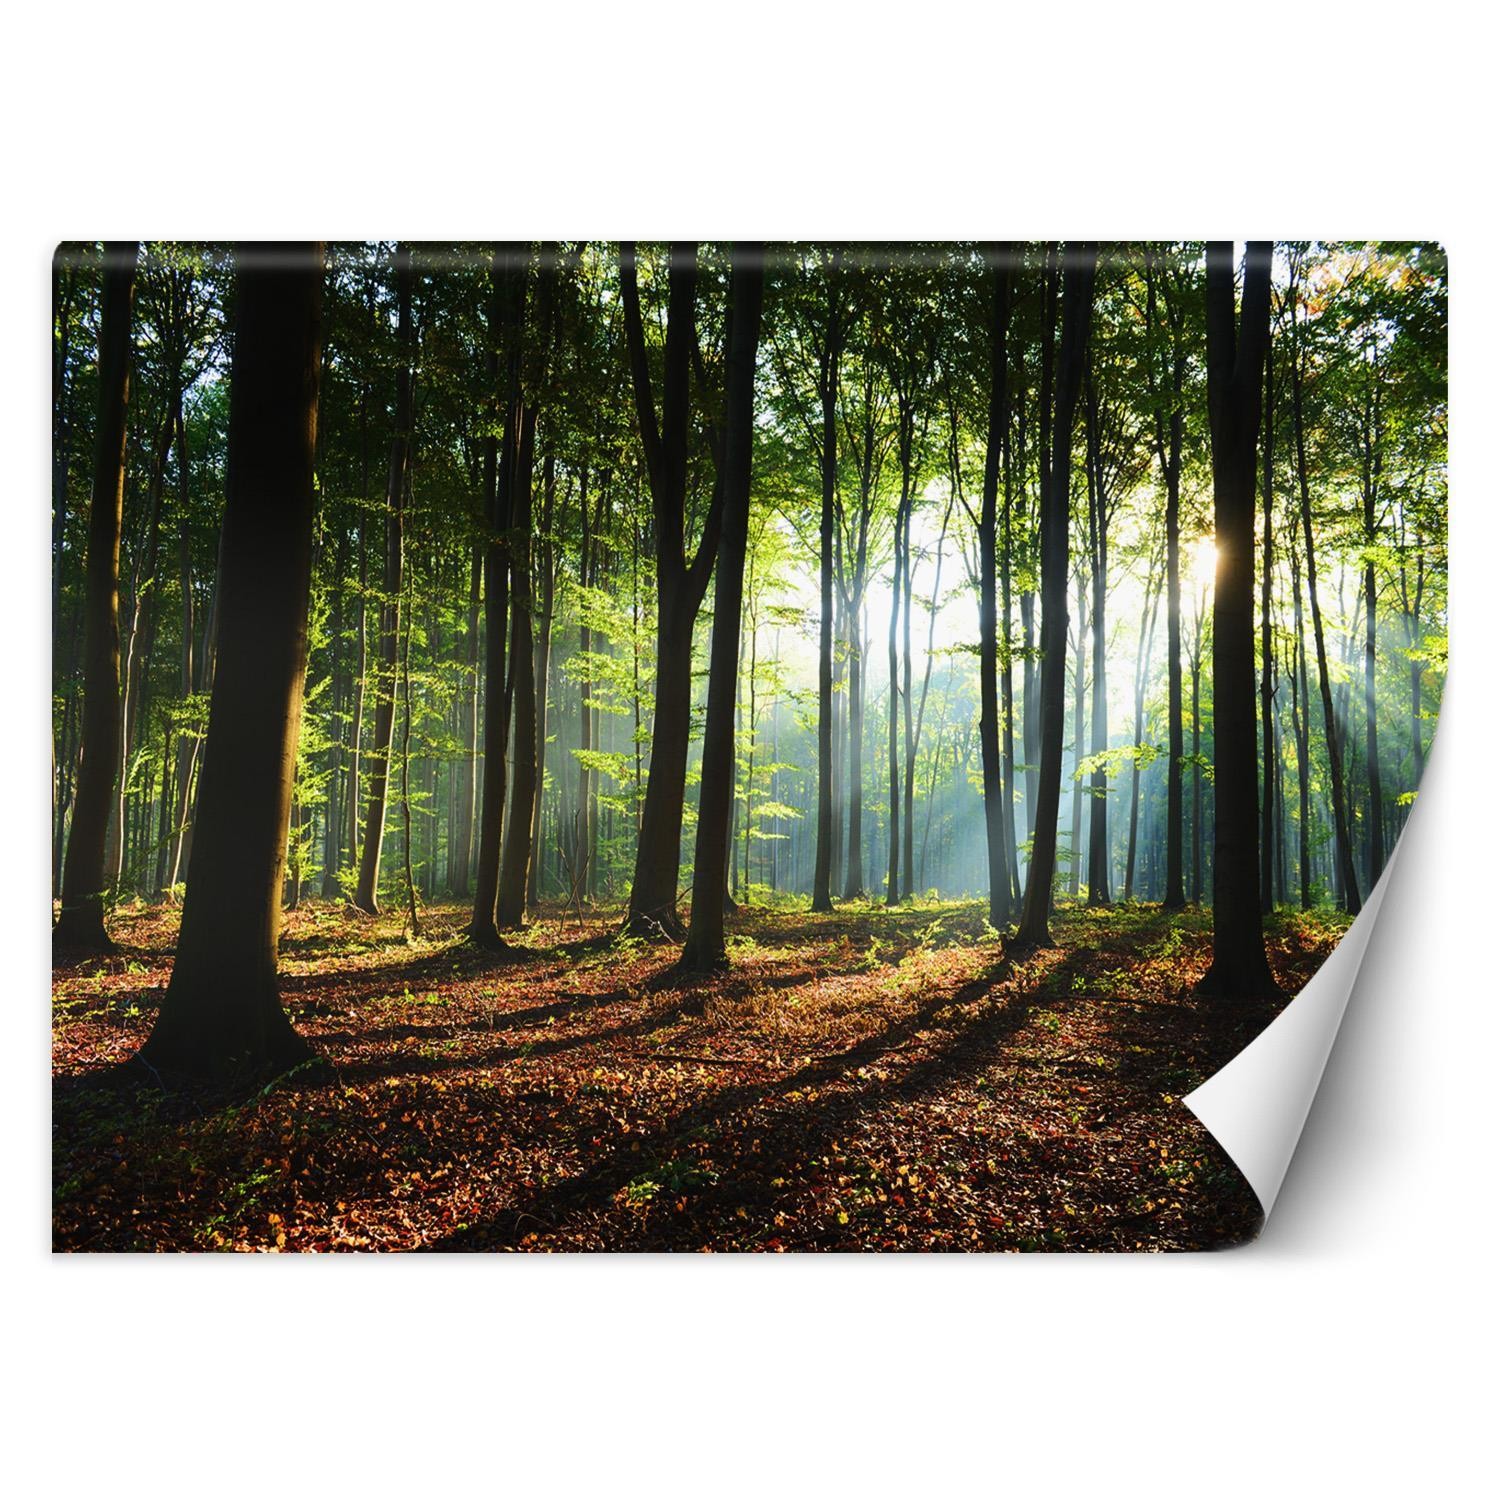 Trend24 – Behang – Ochtend In Het Bos – Vliesbehang – Fotobehang Natuur – Behang Woonkamer – 450x315x2 cm – Incl. behanglijm